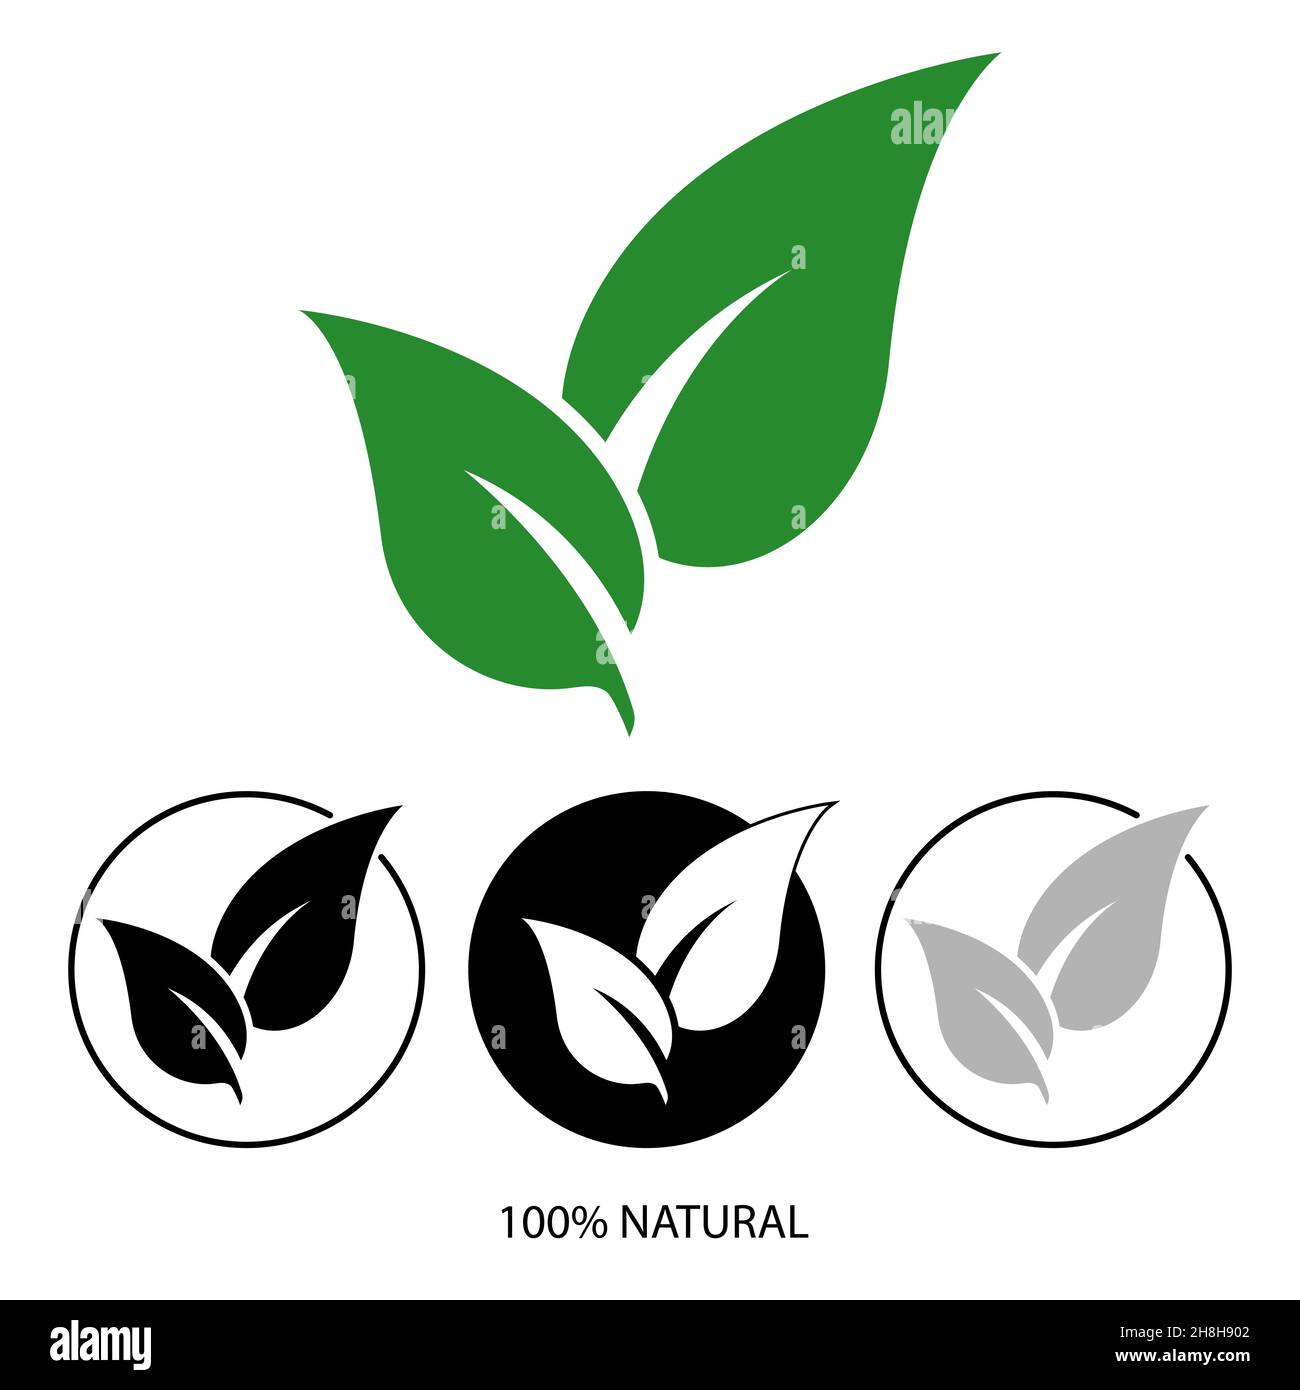 Icono de hoja natural. diseño de logotipo 100% natural. Símbolo de producto orgánico. Diseño natural con icono de hoja verde. Ilustración vectorial. Ilustración del Vector